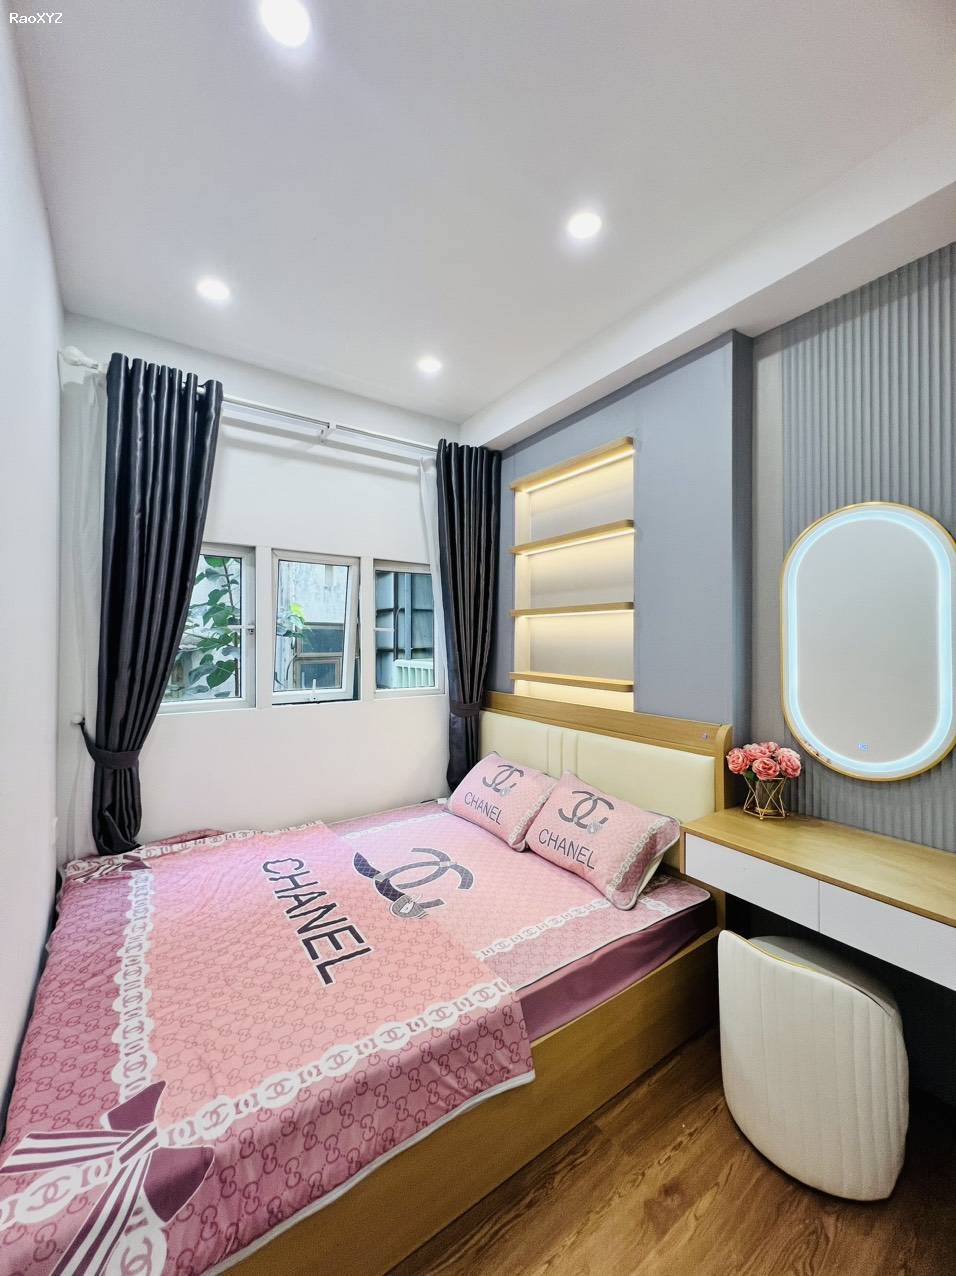 Cho thuê nhà nguyên căn trong Ngõ Khâm Thiên, Đống Đa 4tầng, 2 ngủ - Giá 16 triệu - Full nội thất